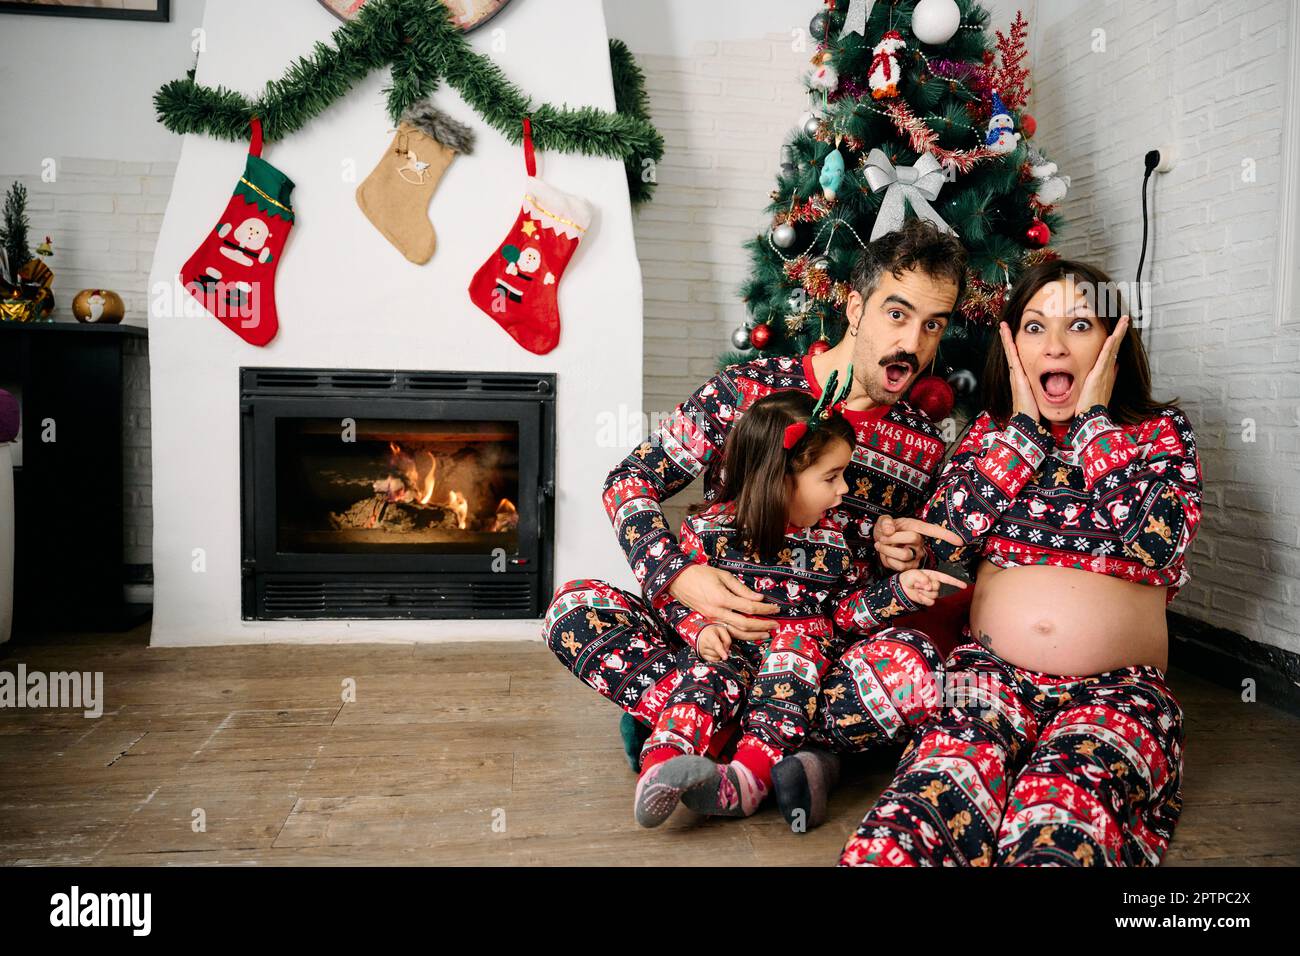 Eine Familie, mit Vater, Mutter und Tochter, die dazu passende Weihnachtsschlafanzüge tragen, Familienfotos vor dem Kamin machen und einen Weihnachts-Tr Stockfoto